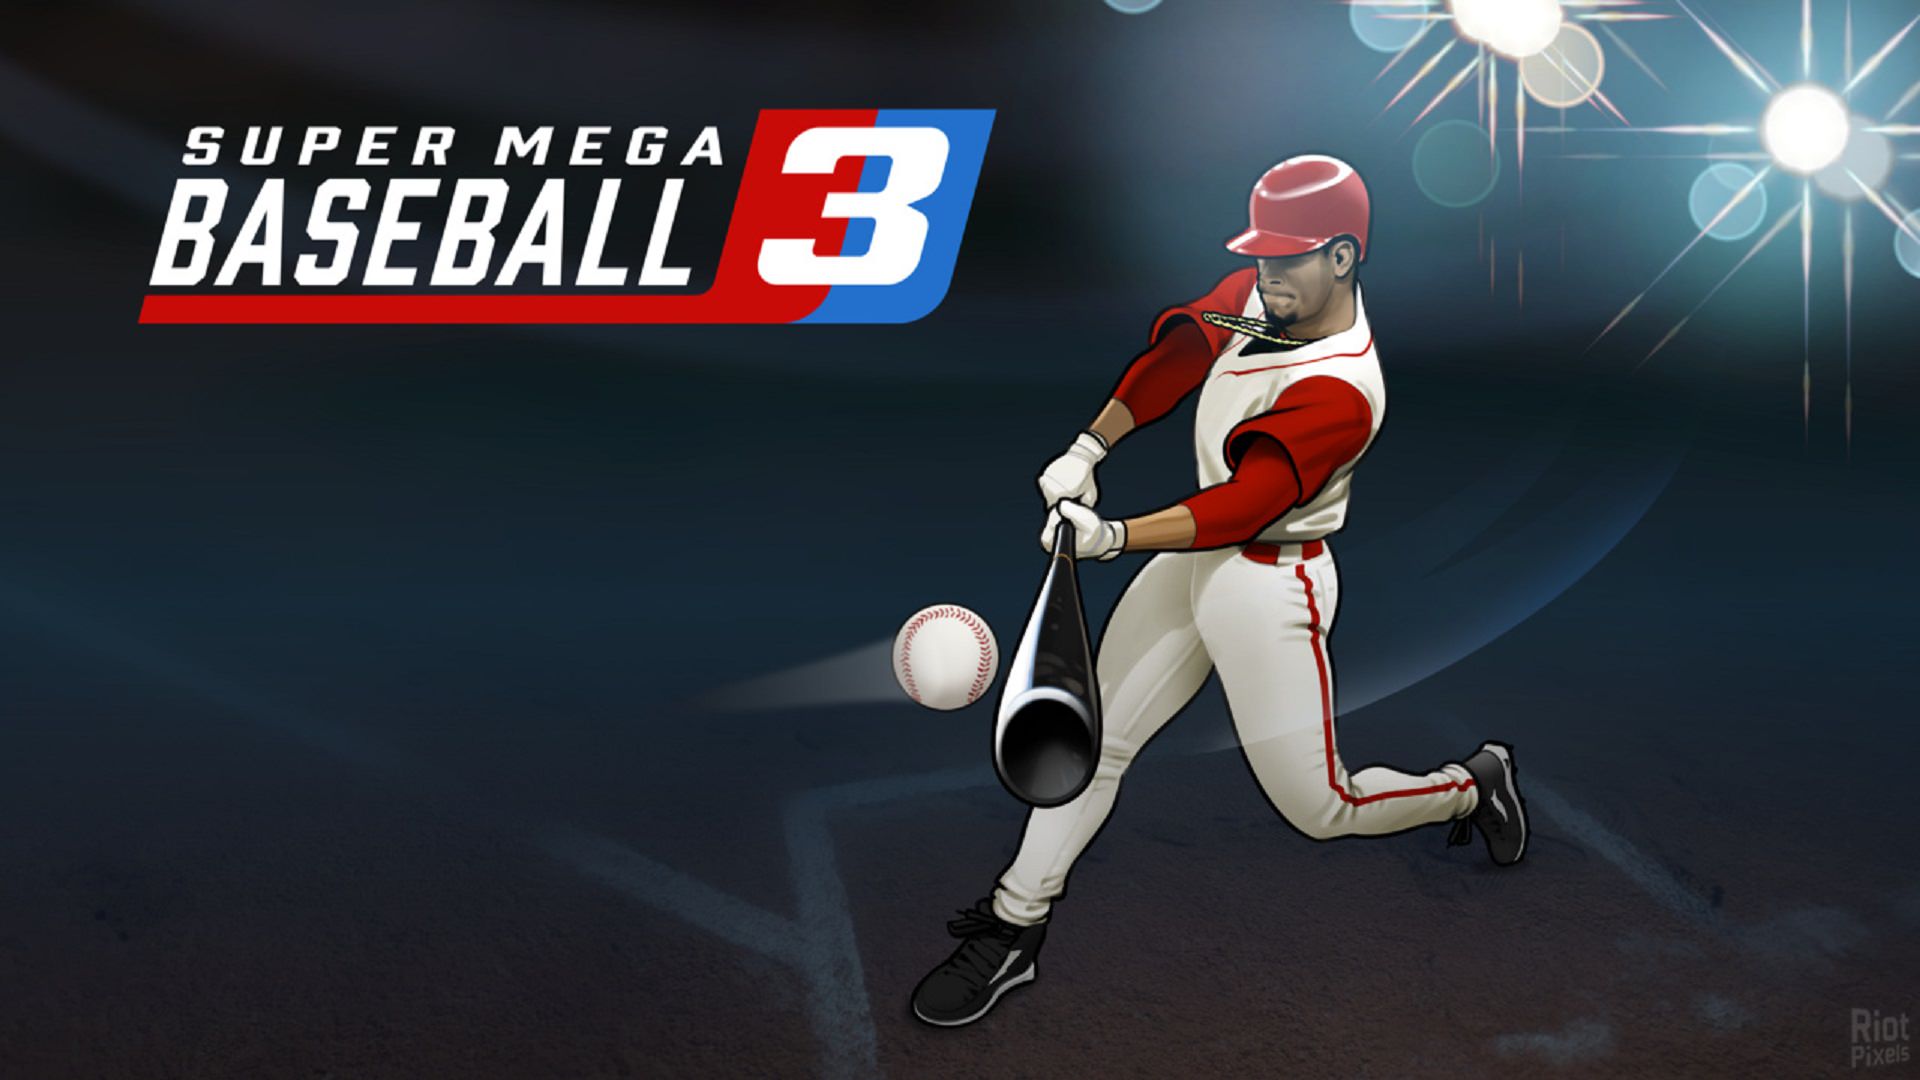 یک بازیکن بیسبال در حال ضربه به توپ در Super Mega Baseball 3